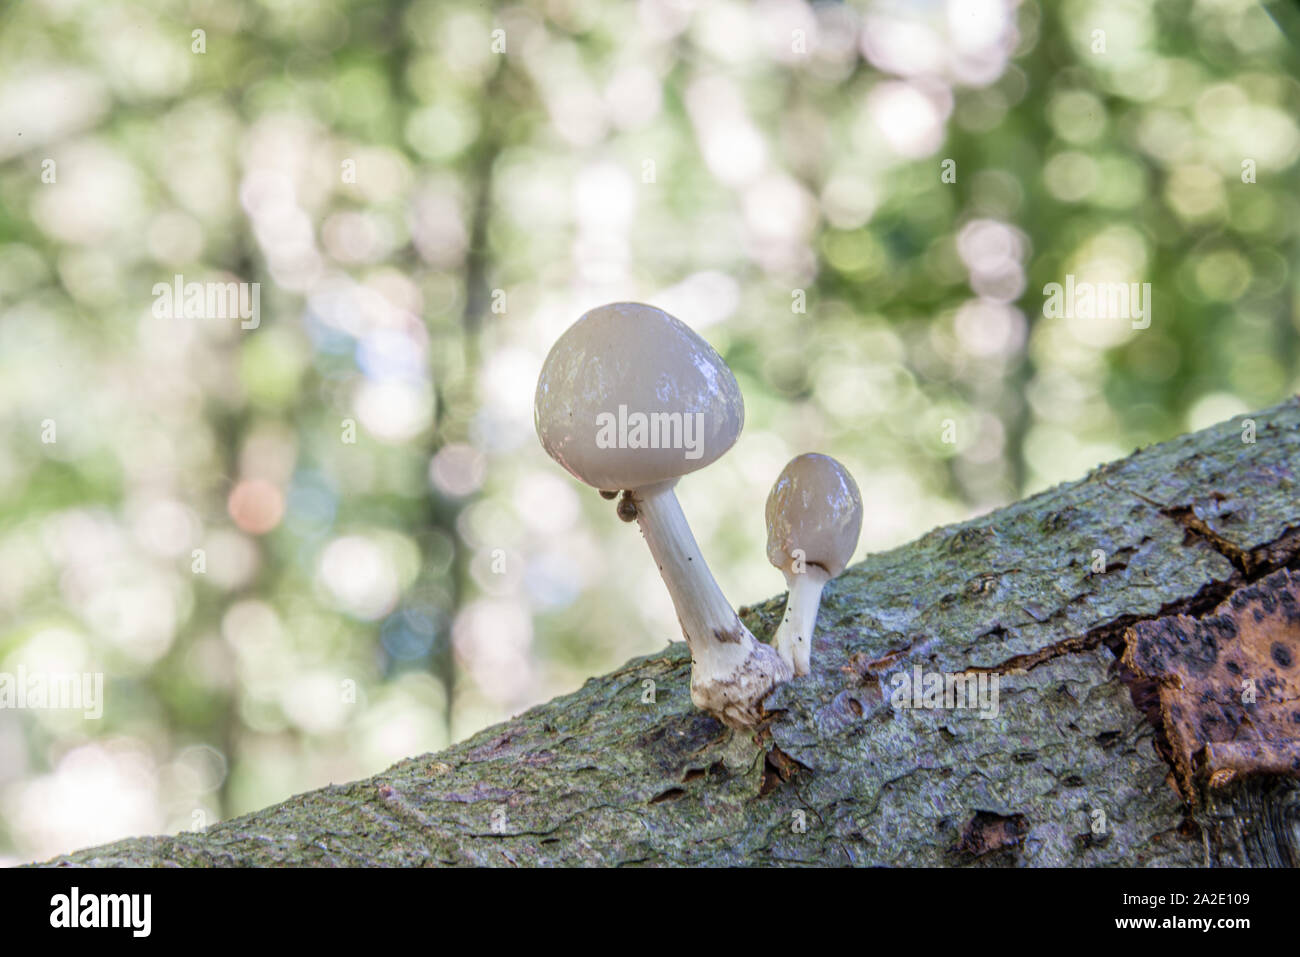 Cerca de porcelana de setas (Oudemansiella mucida) en un registro de roble en un bosque en otoño Foto de stock